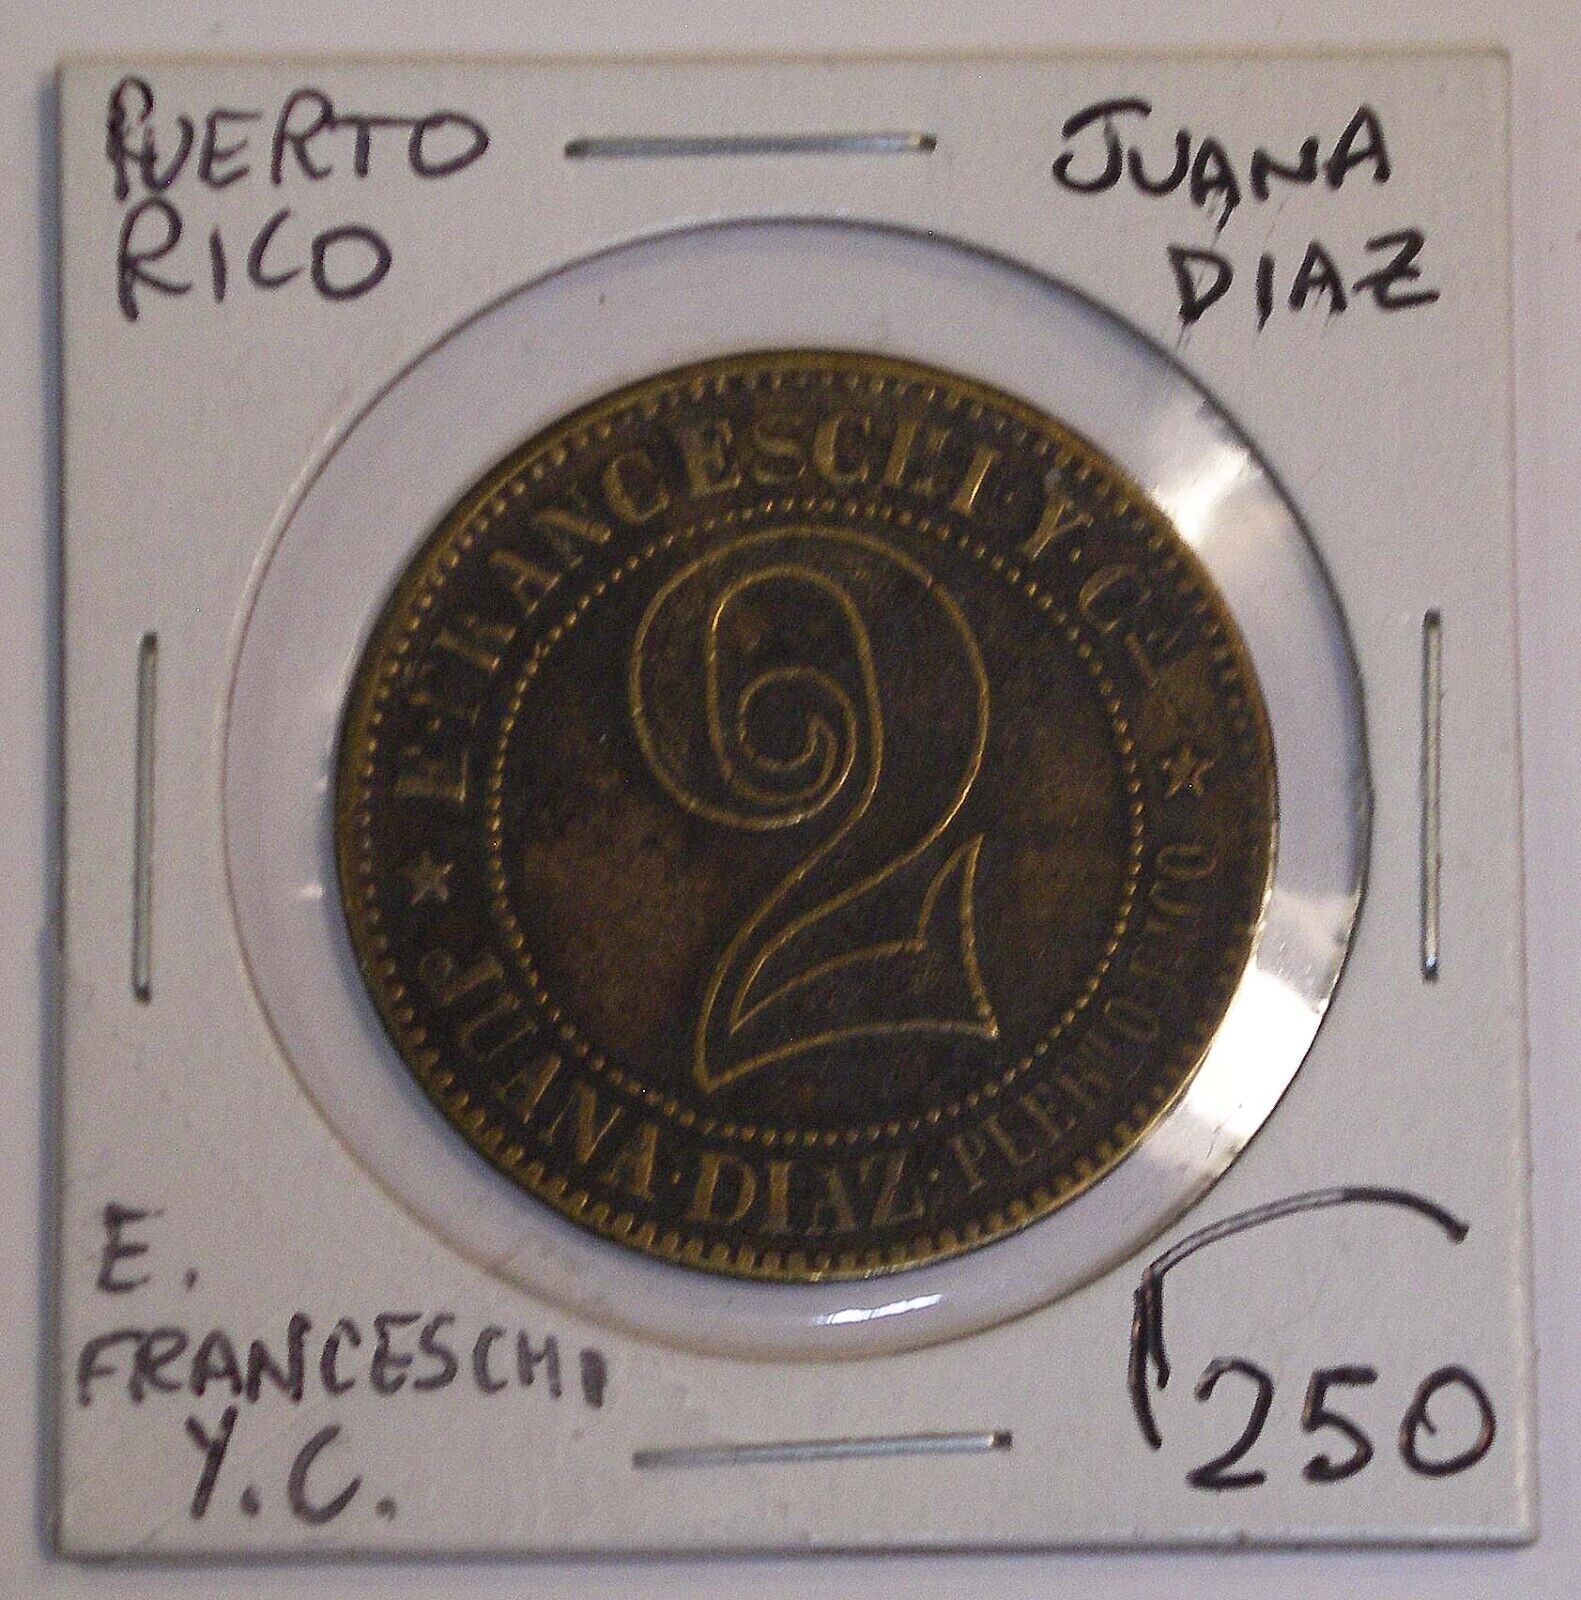 2 E FRANCESCHI Y C. JUANA DIAZ PUERTO RICO ND (1890) Token RARE #3566